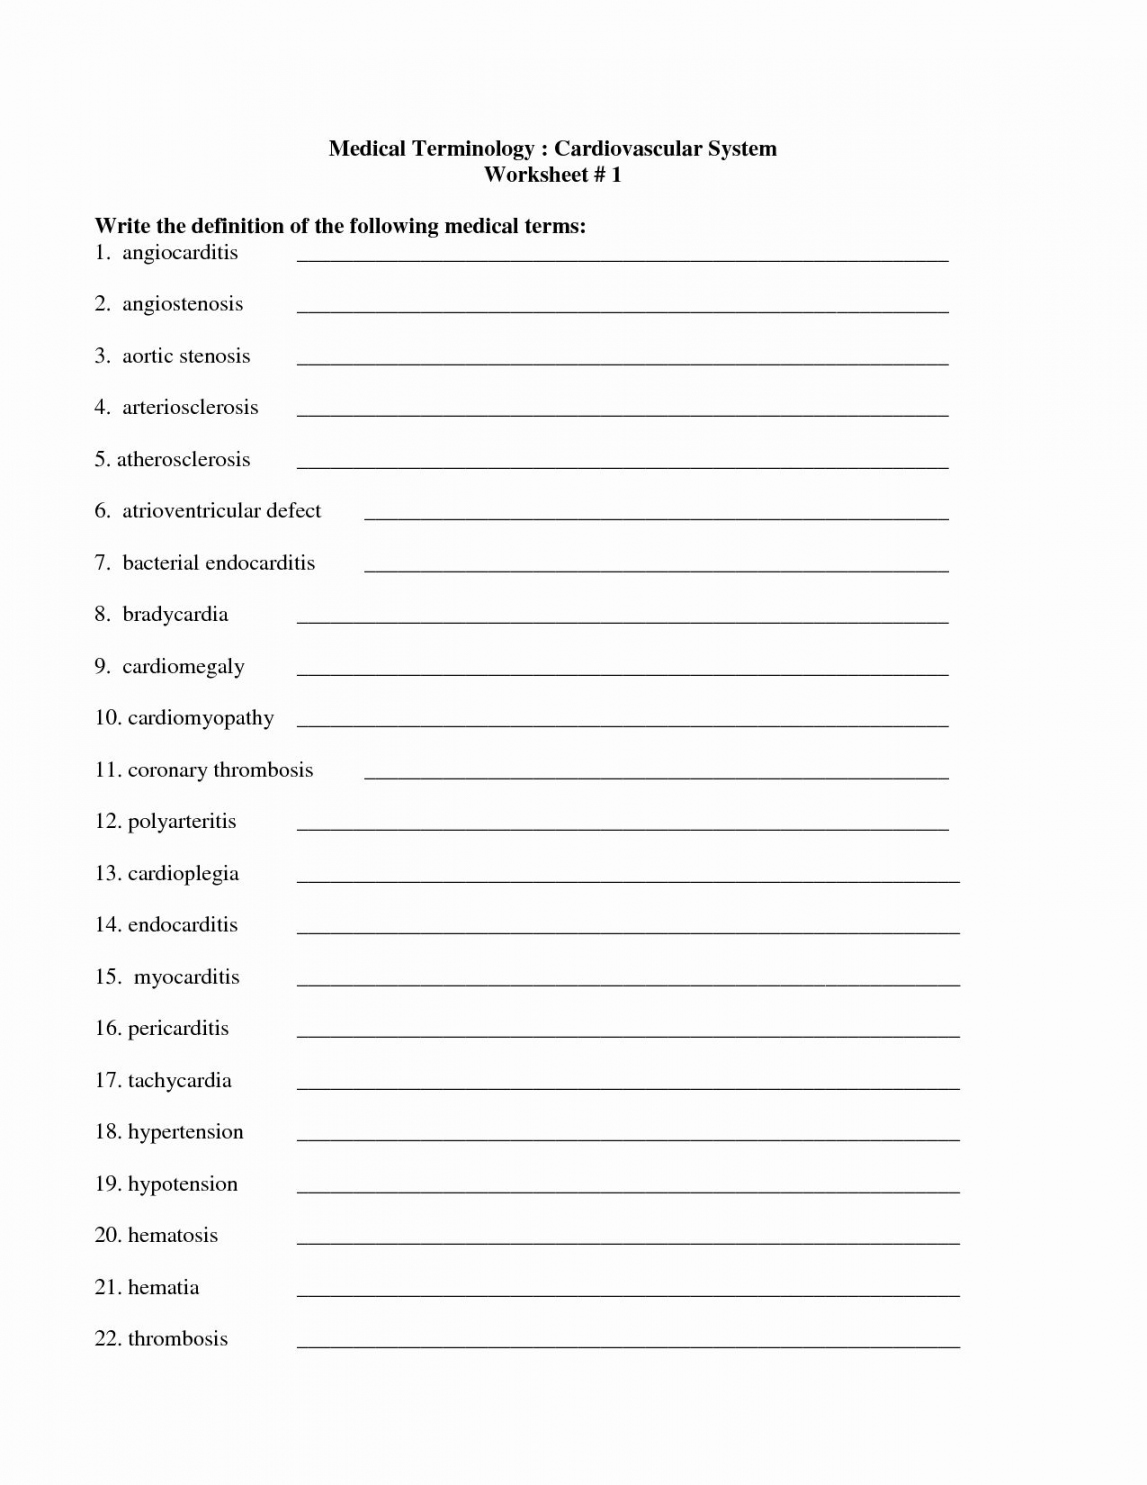 Free Printable Medical Terminology Worksheets - FREE Printables - Free Printable Medical Terminology Worksheet